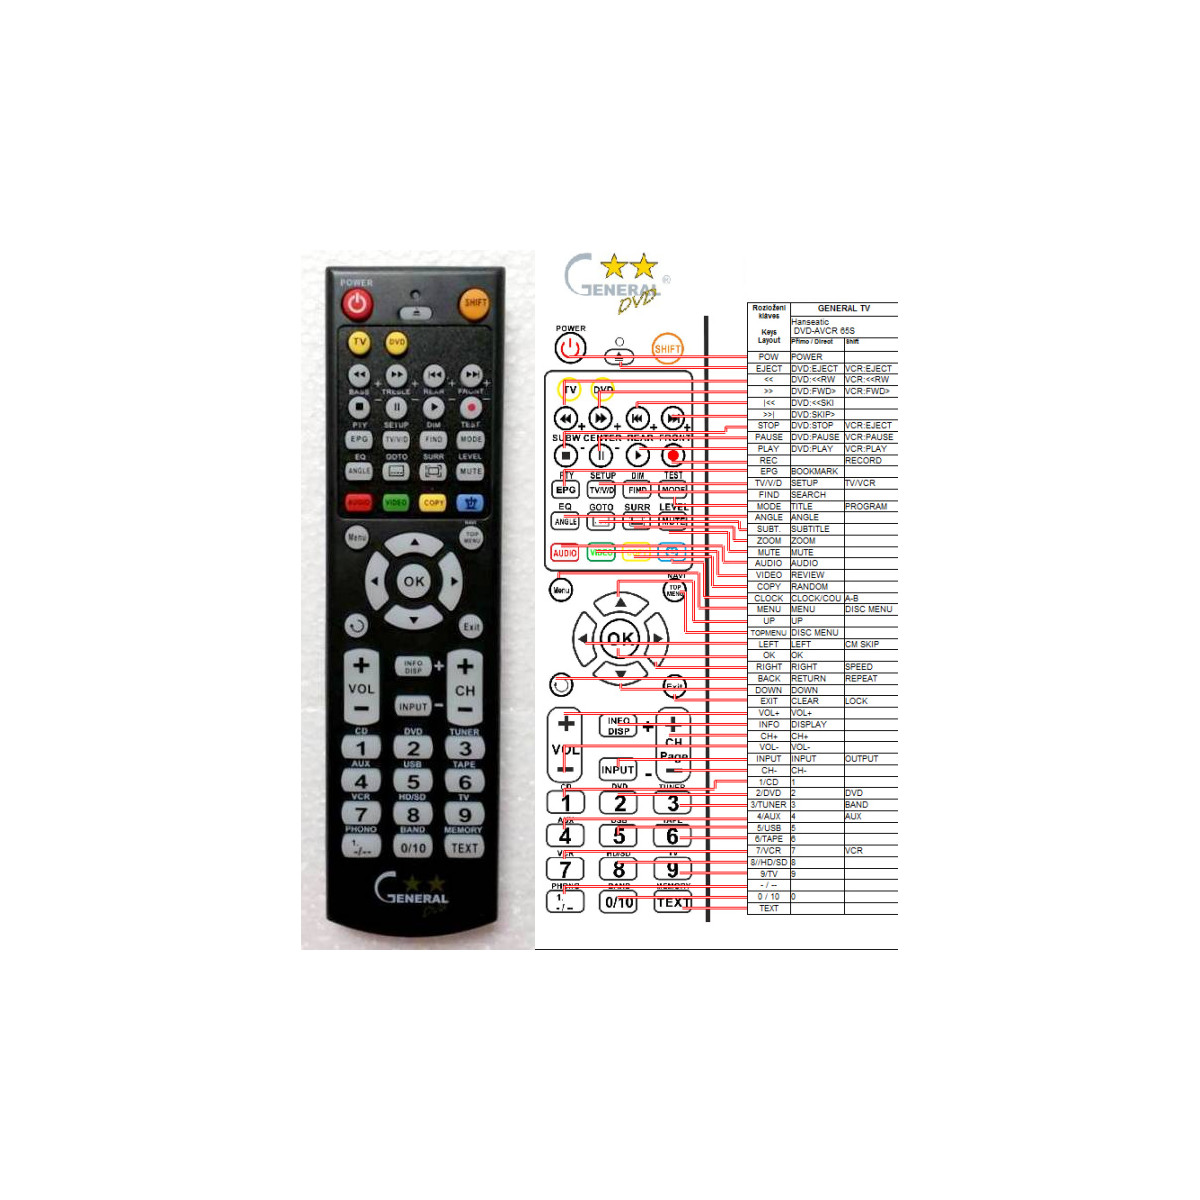 Viac oHanseatic DVD-AVČR 65S - náhradný diaľkový ovládač kompatibilný